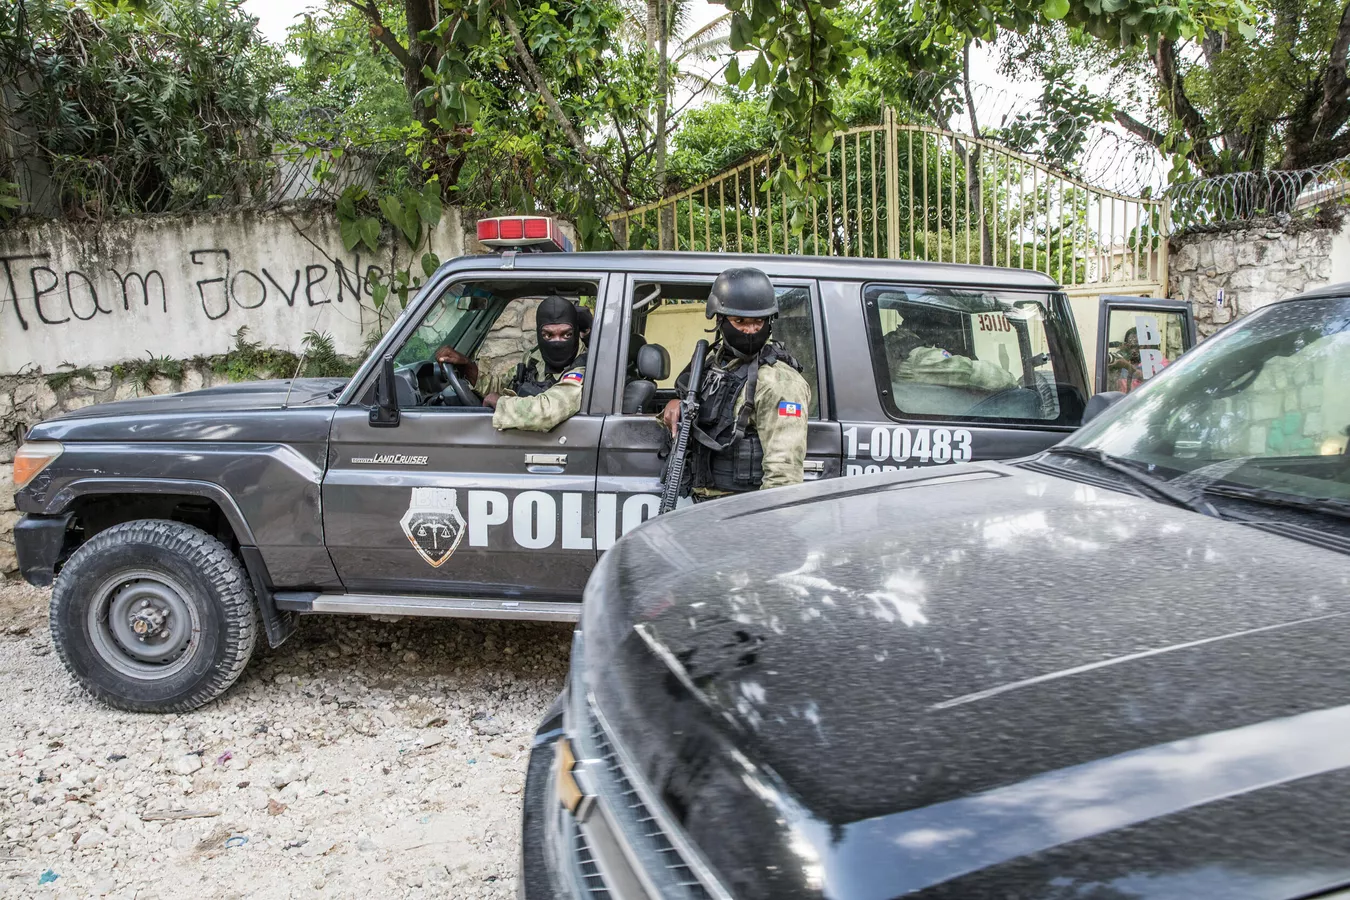 paises del caribe llaman a fortalecer la policia de haiti ante la crisis laverdaddemonagas.com 1114333463 0 0 2500 1667 1440x900 80 0 1 5e61ef85daa4dd7a3c79c881a712029f.jpg